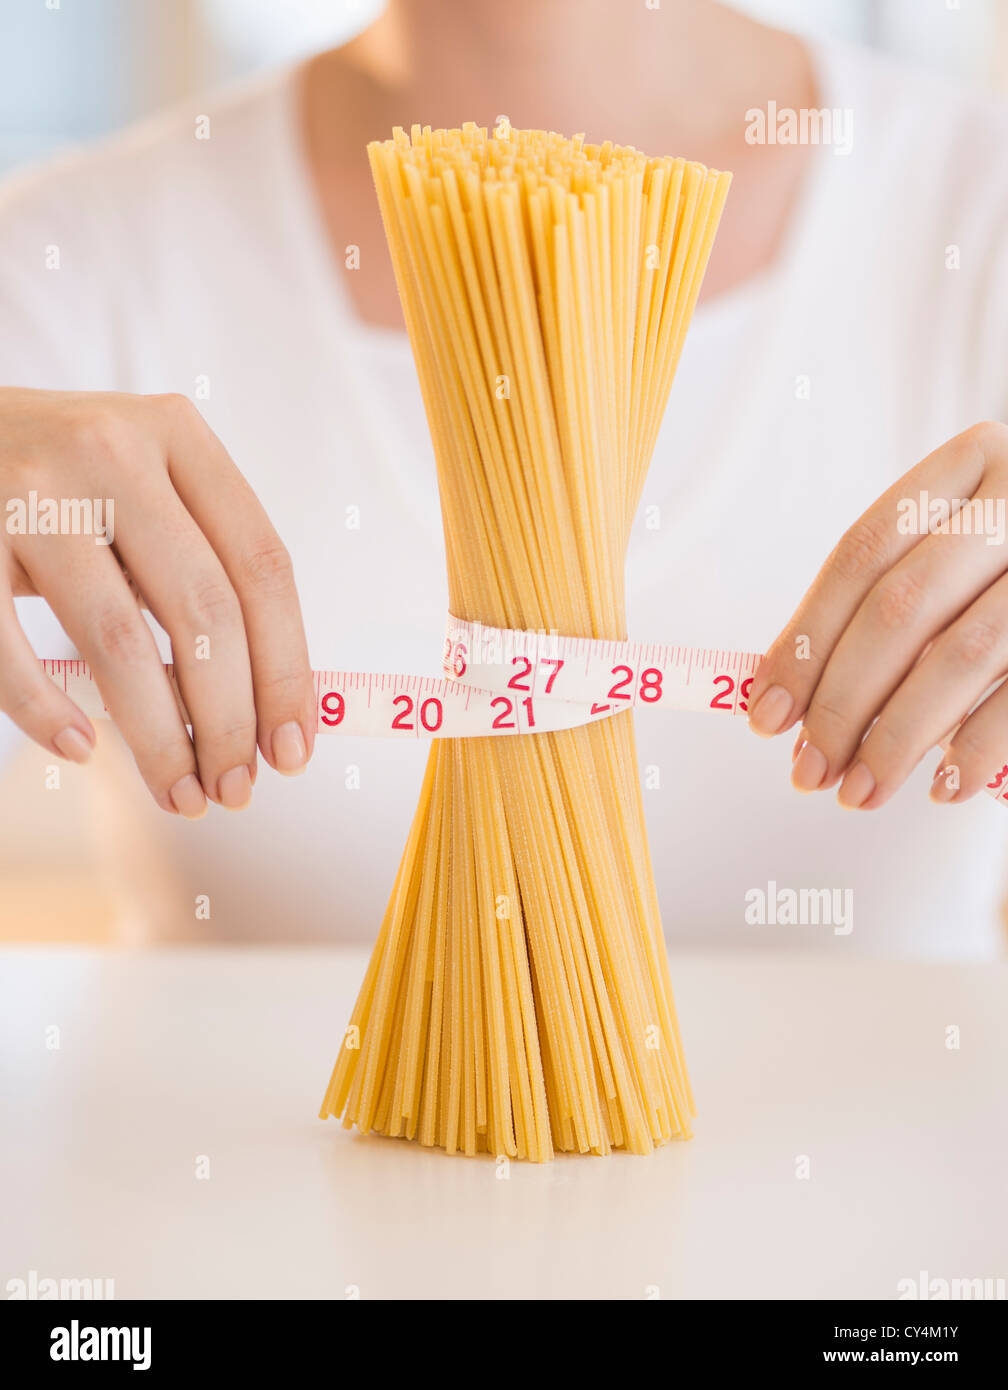 USA, New Jersey, Jersey City, Nahaufnahme von Frauenhand Pasta mit Maßband messen Stockfoto